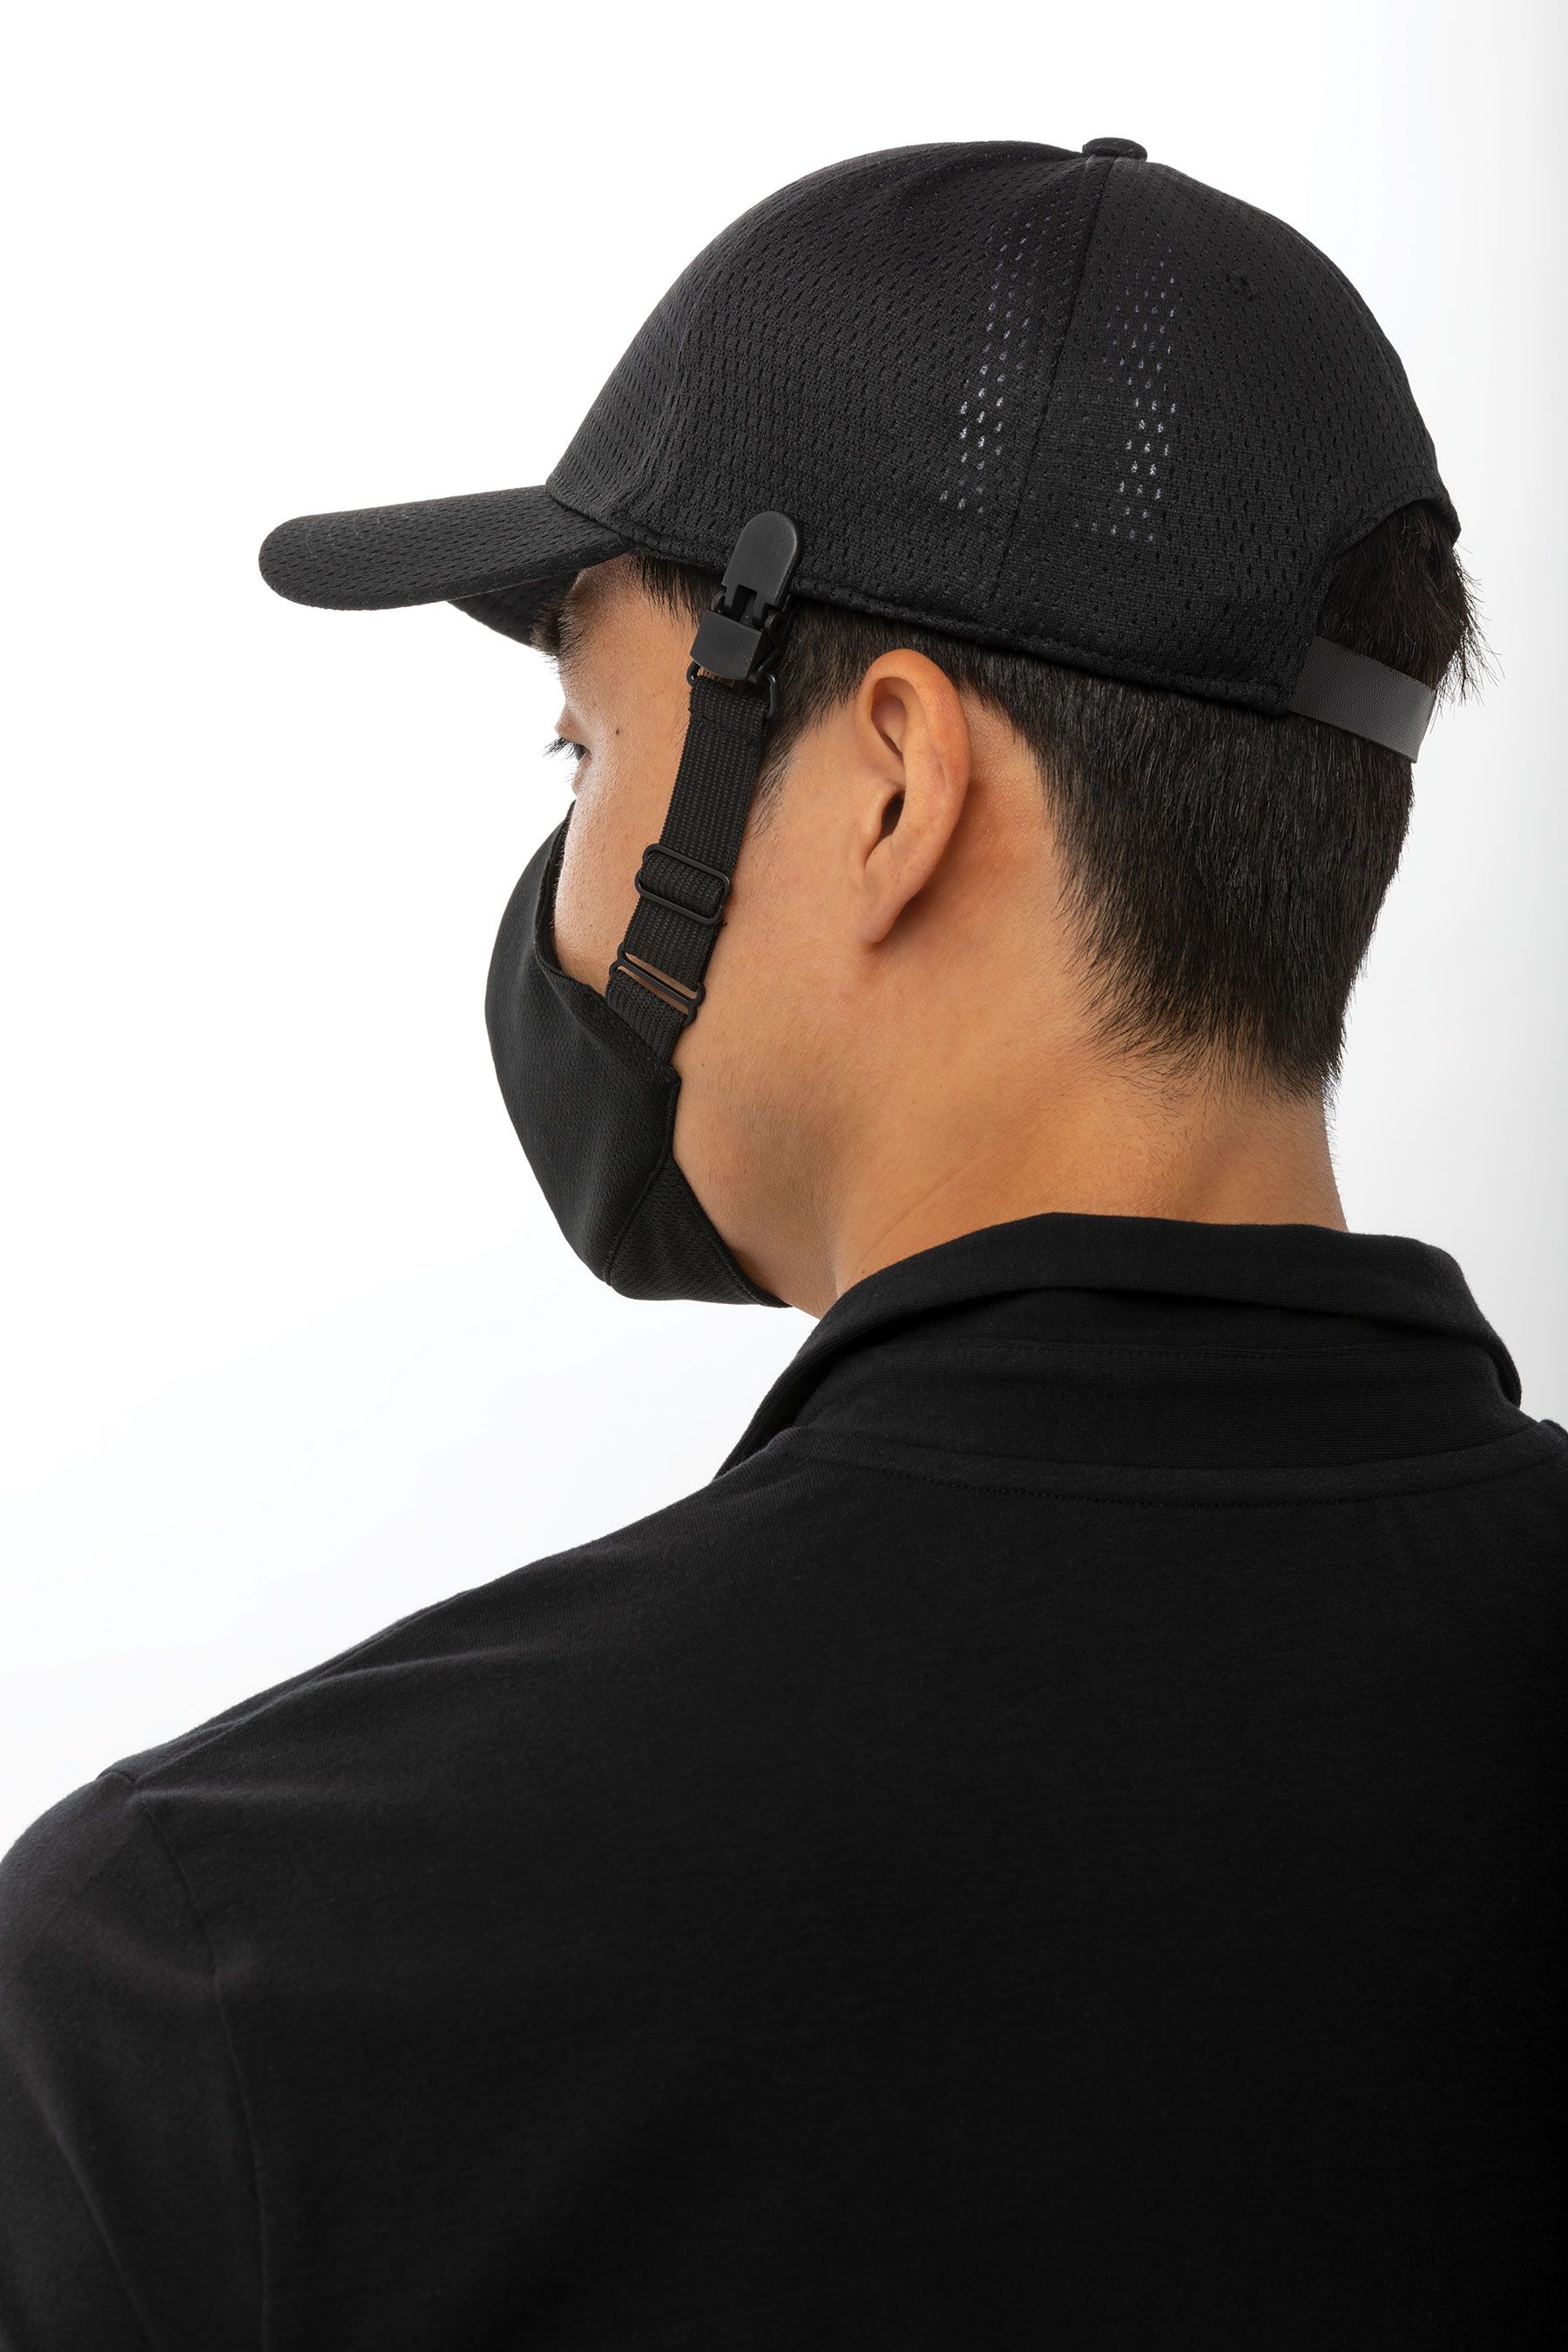 スキルドシリーズ〈FC5〉ブラック 帽子装着型 マスク(6枚入)